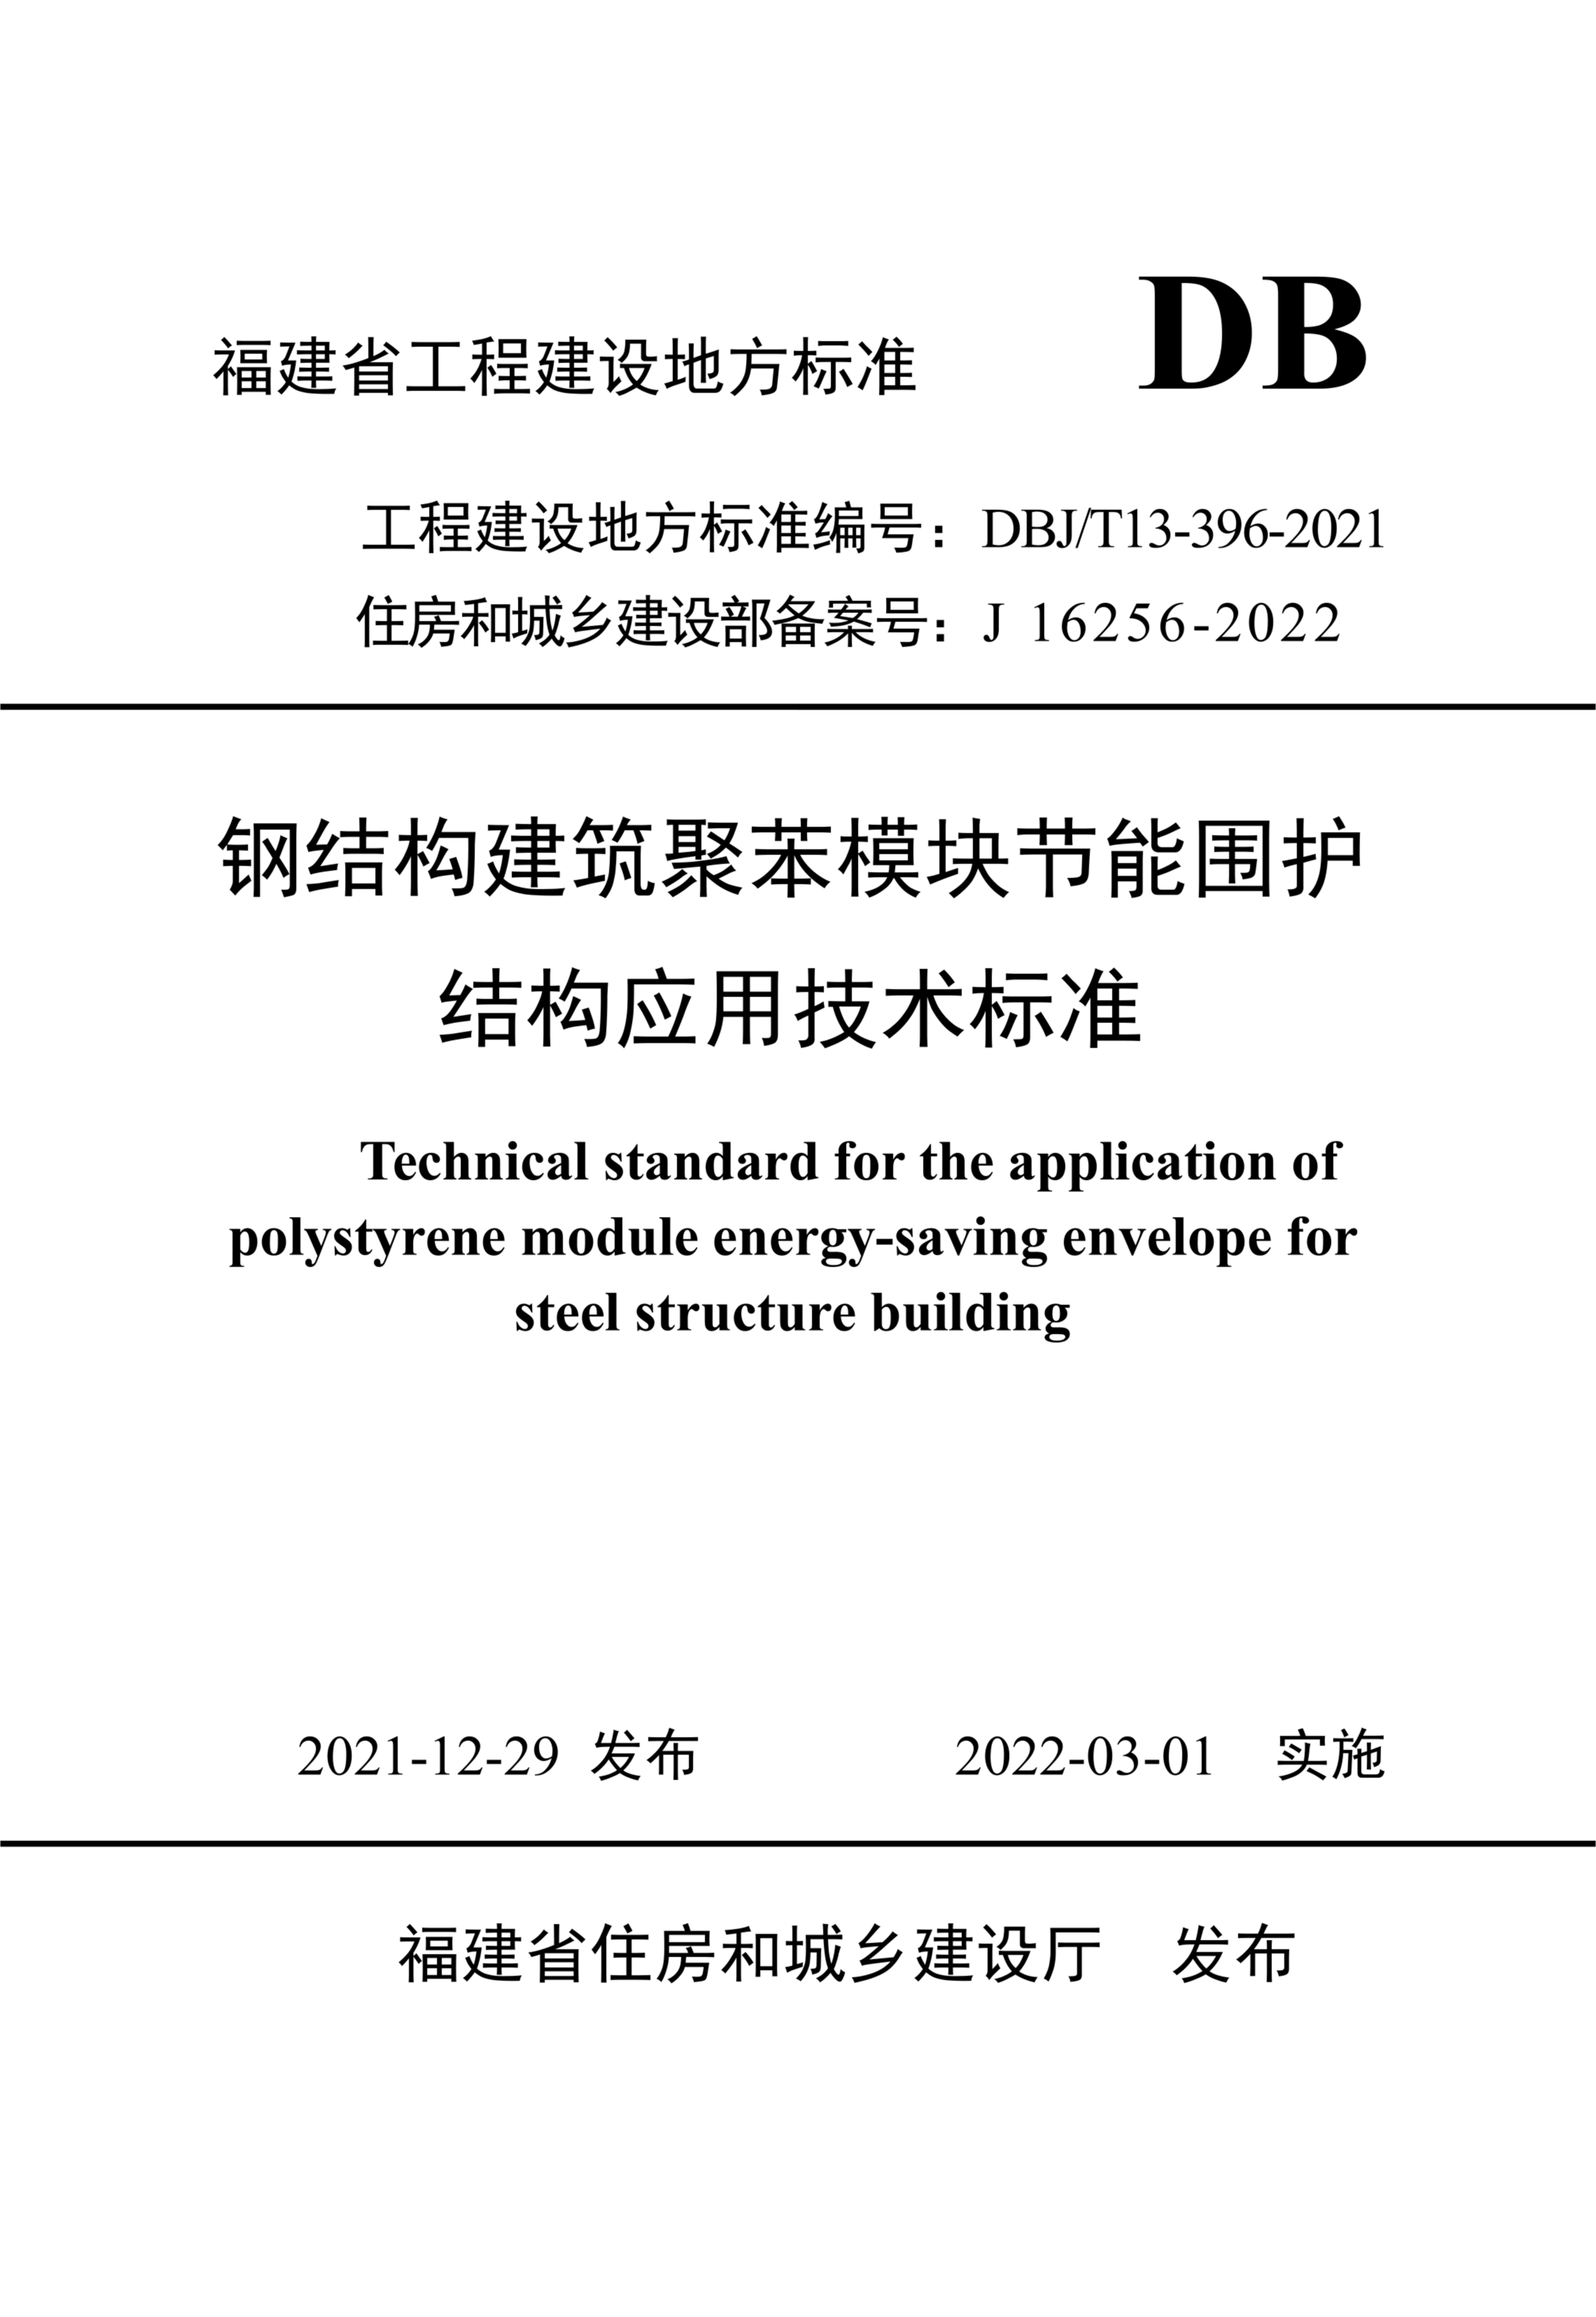 DBJ/T 13-396-2021 钢结构建筑聚苯模块节能围护结构技术标准